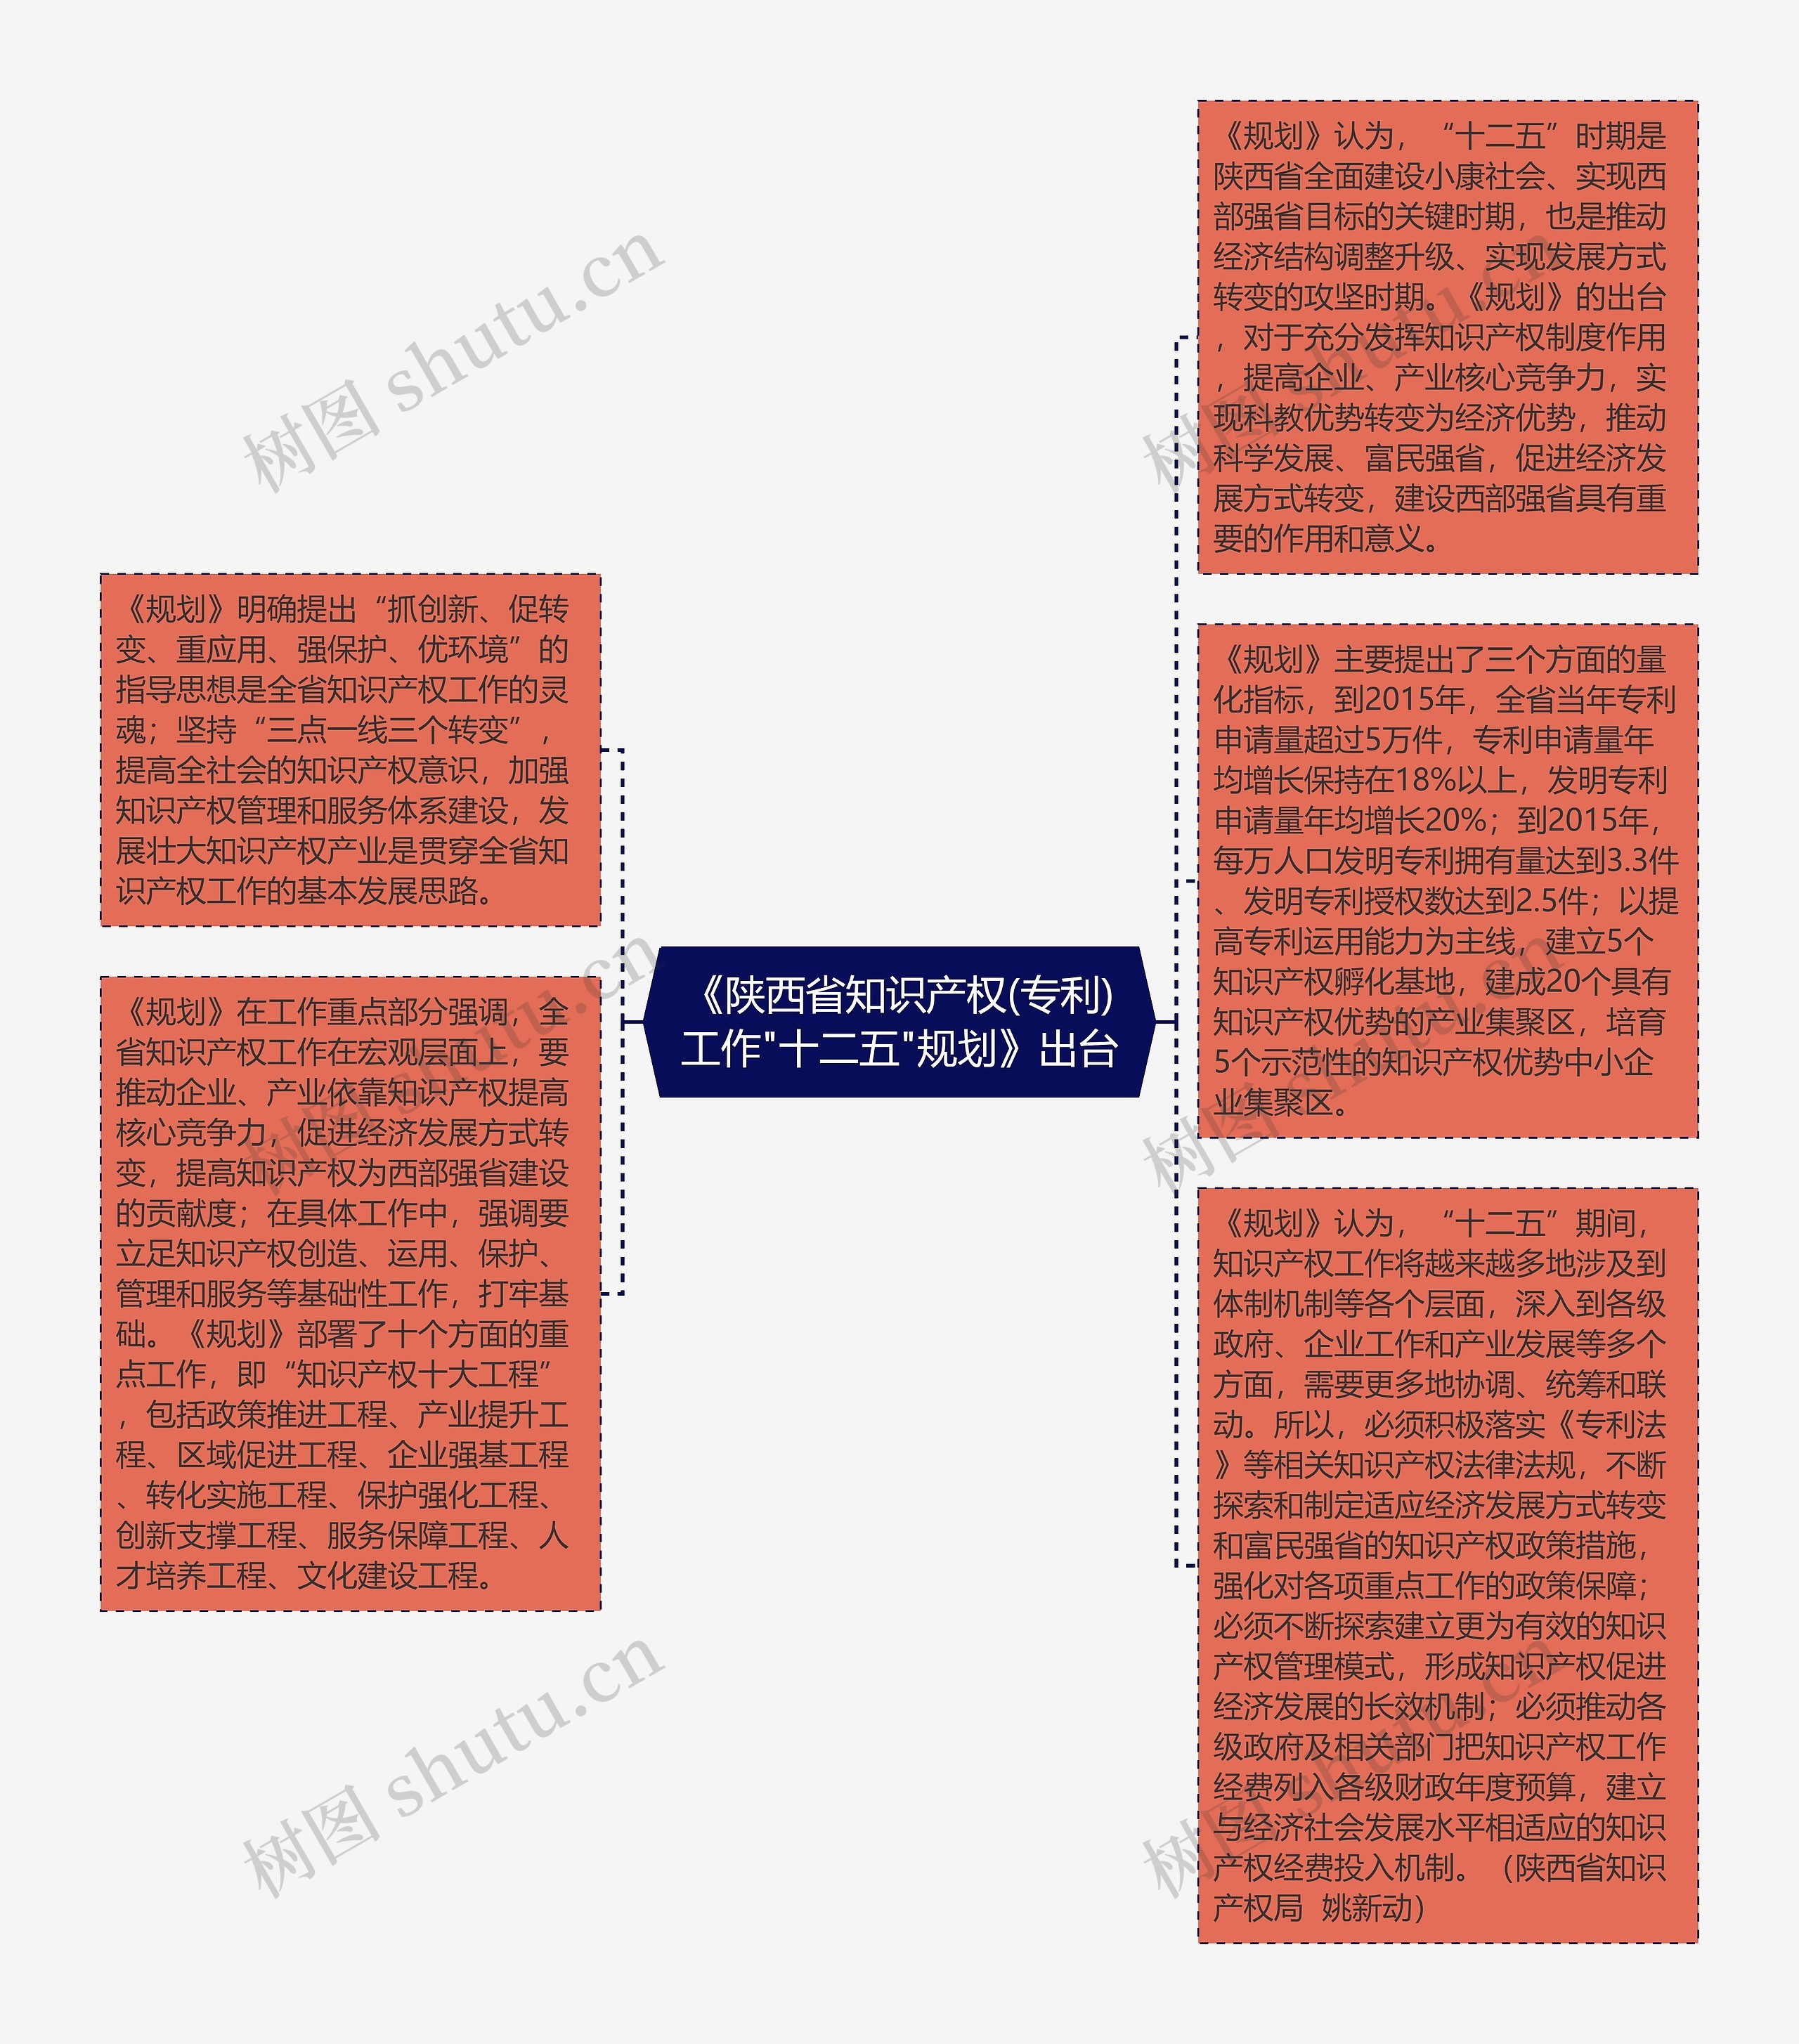 《陕西省知识产权(专利)工作"十二五"规划》出台思维导图